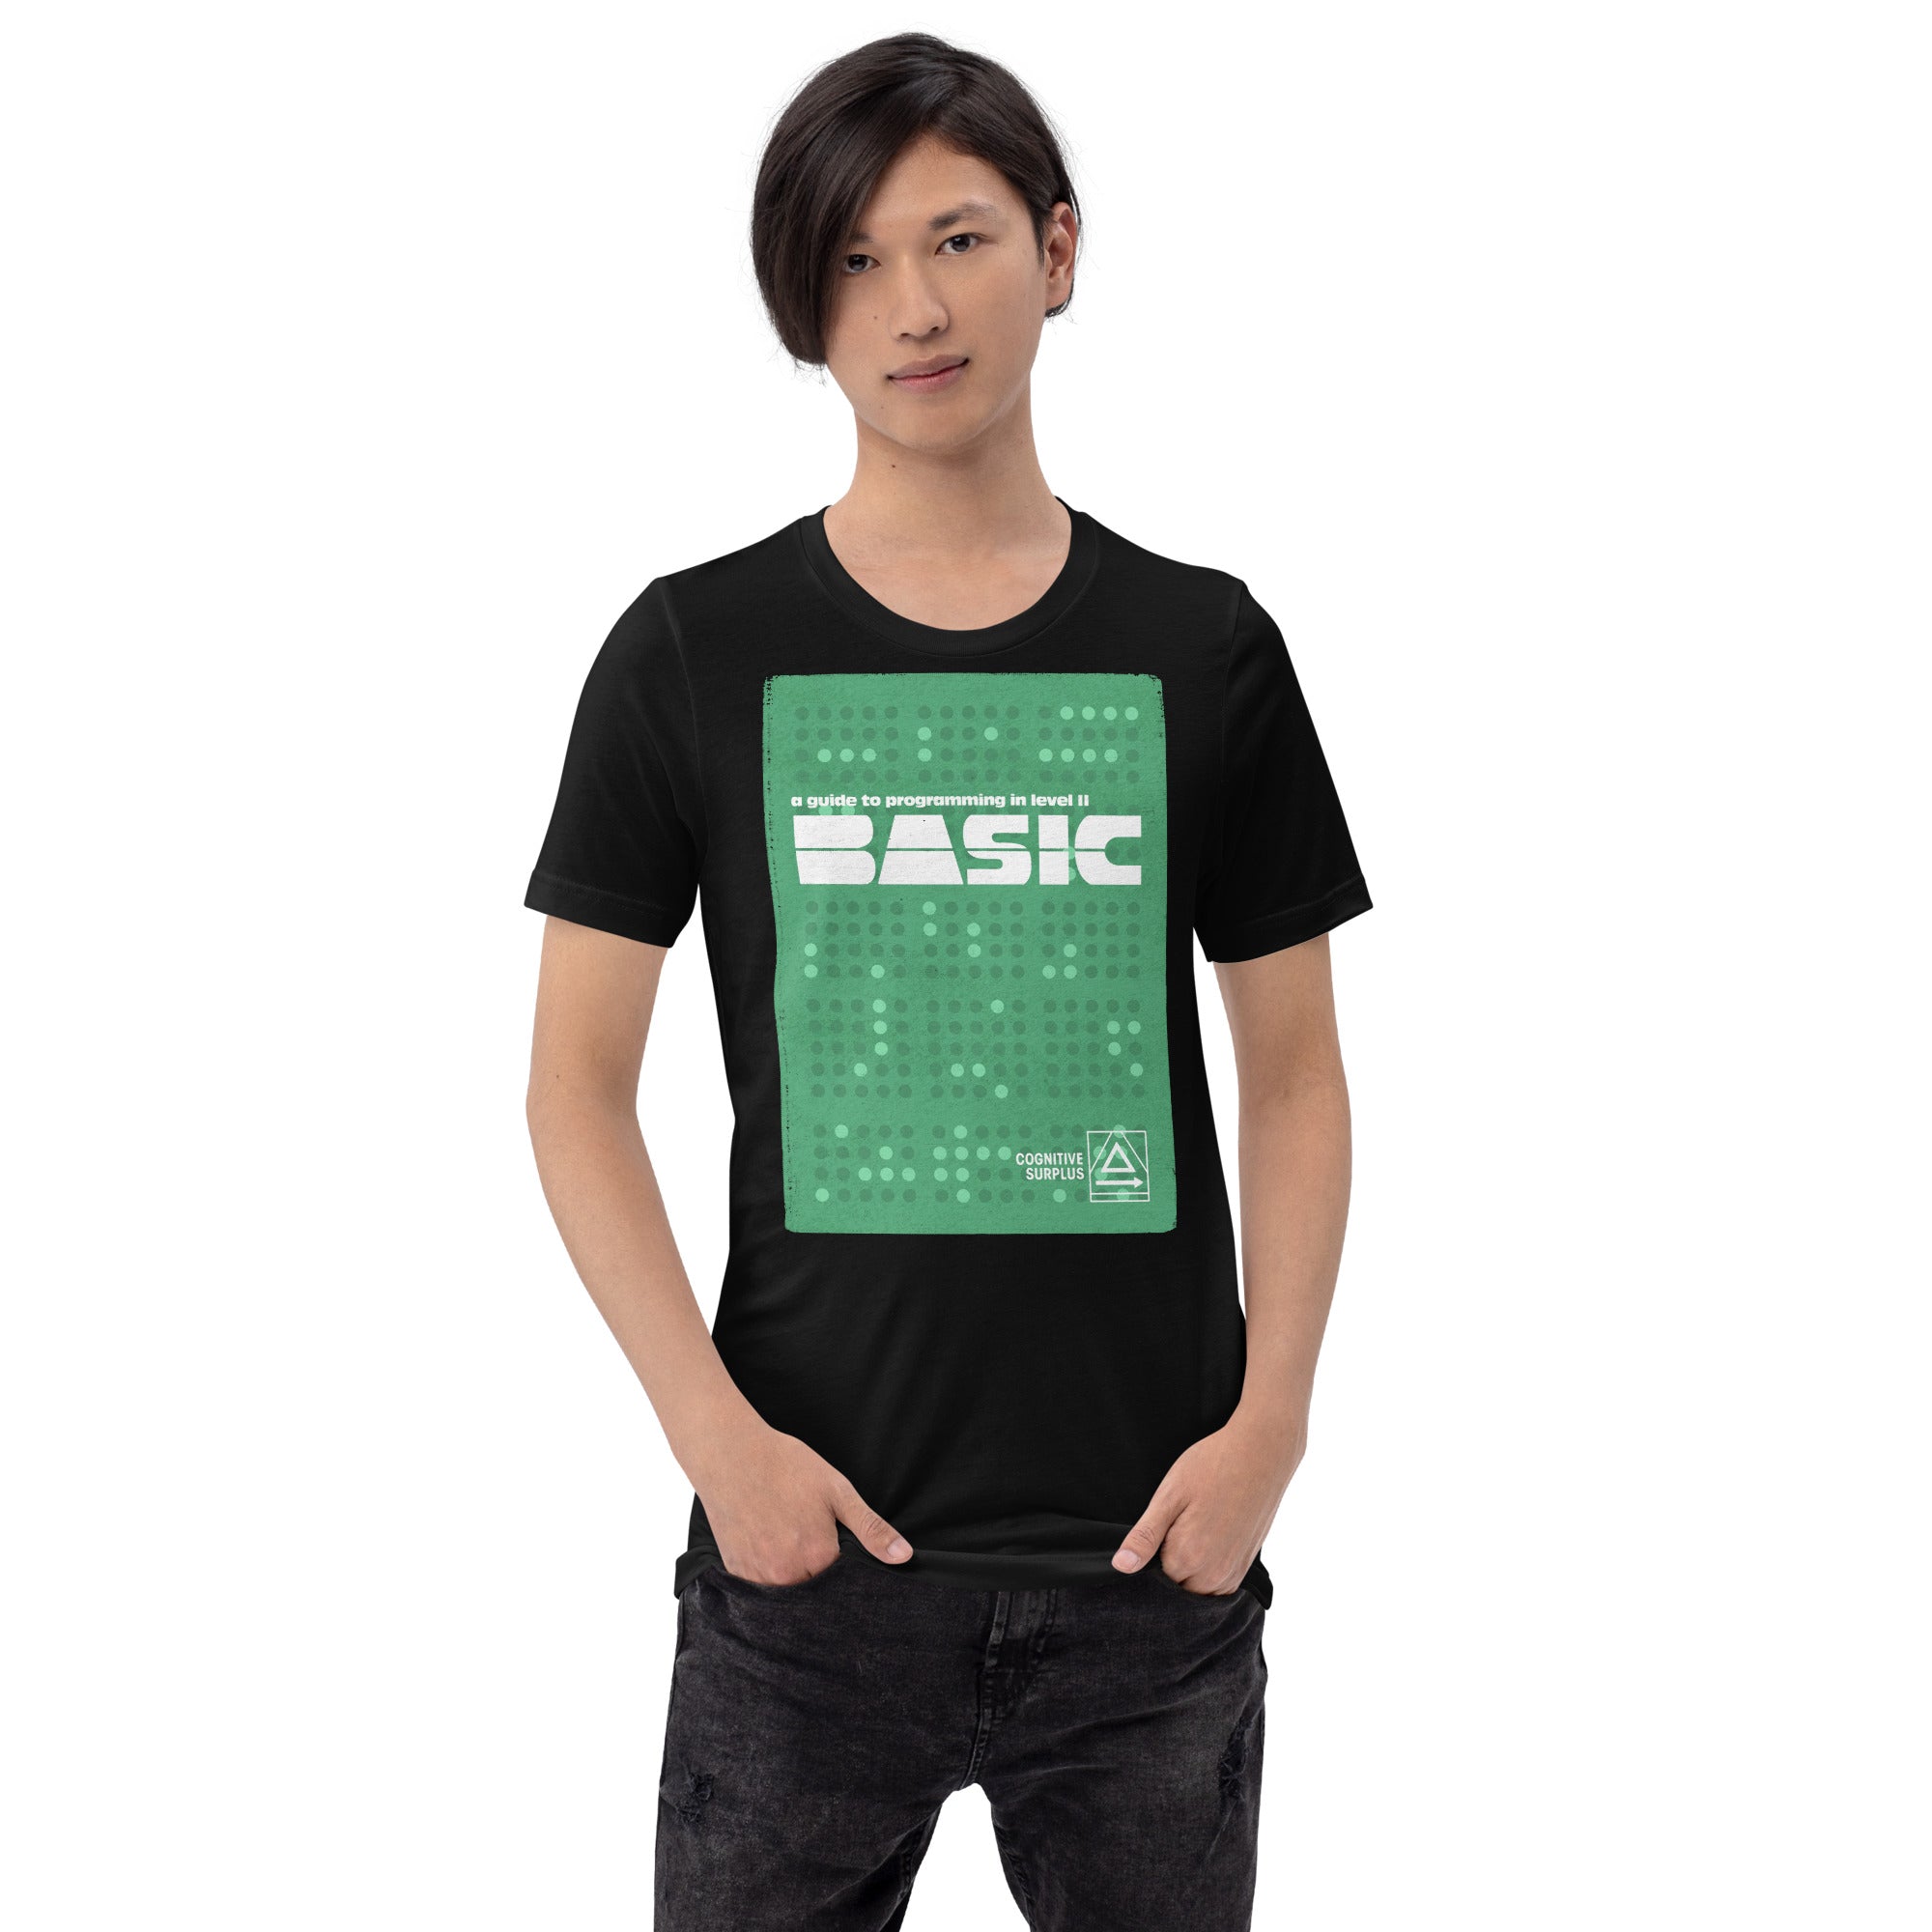 unisex-staple-t-shirt-black-front-659d8d46d155d.jpg